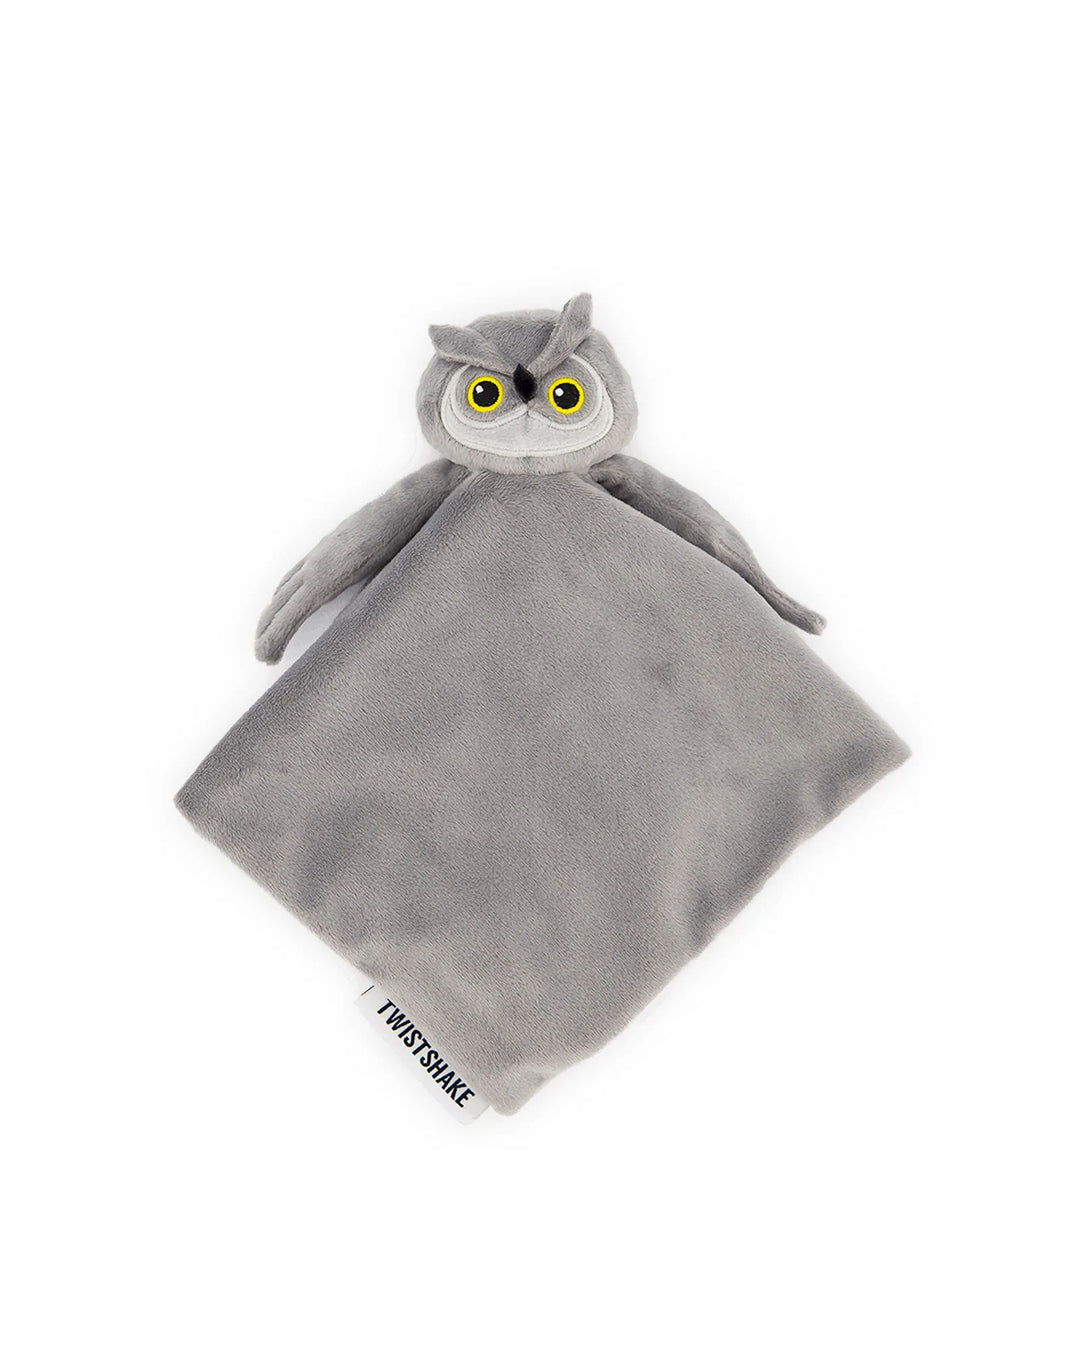 Owl Comfort Blanket